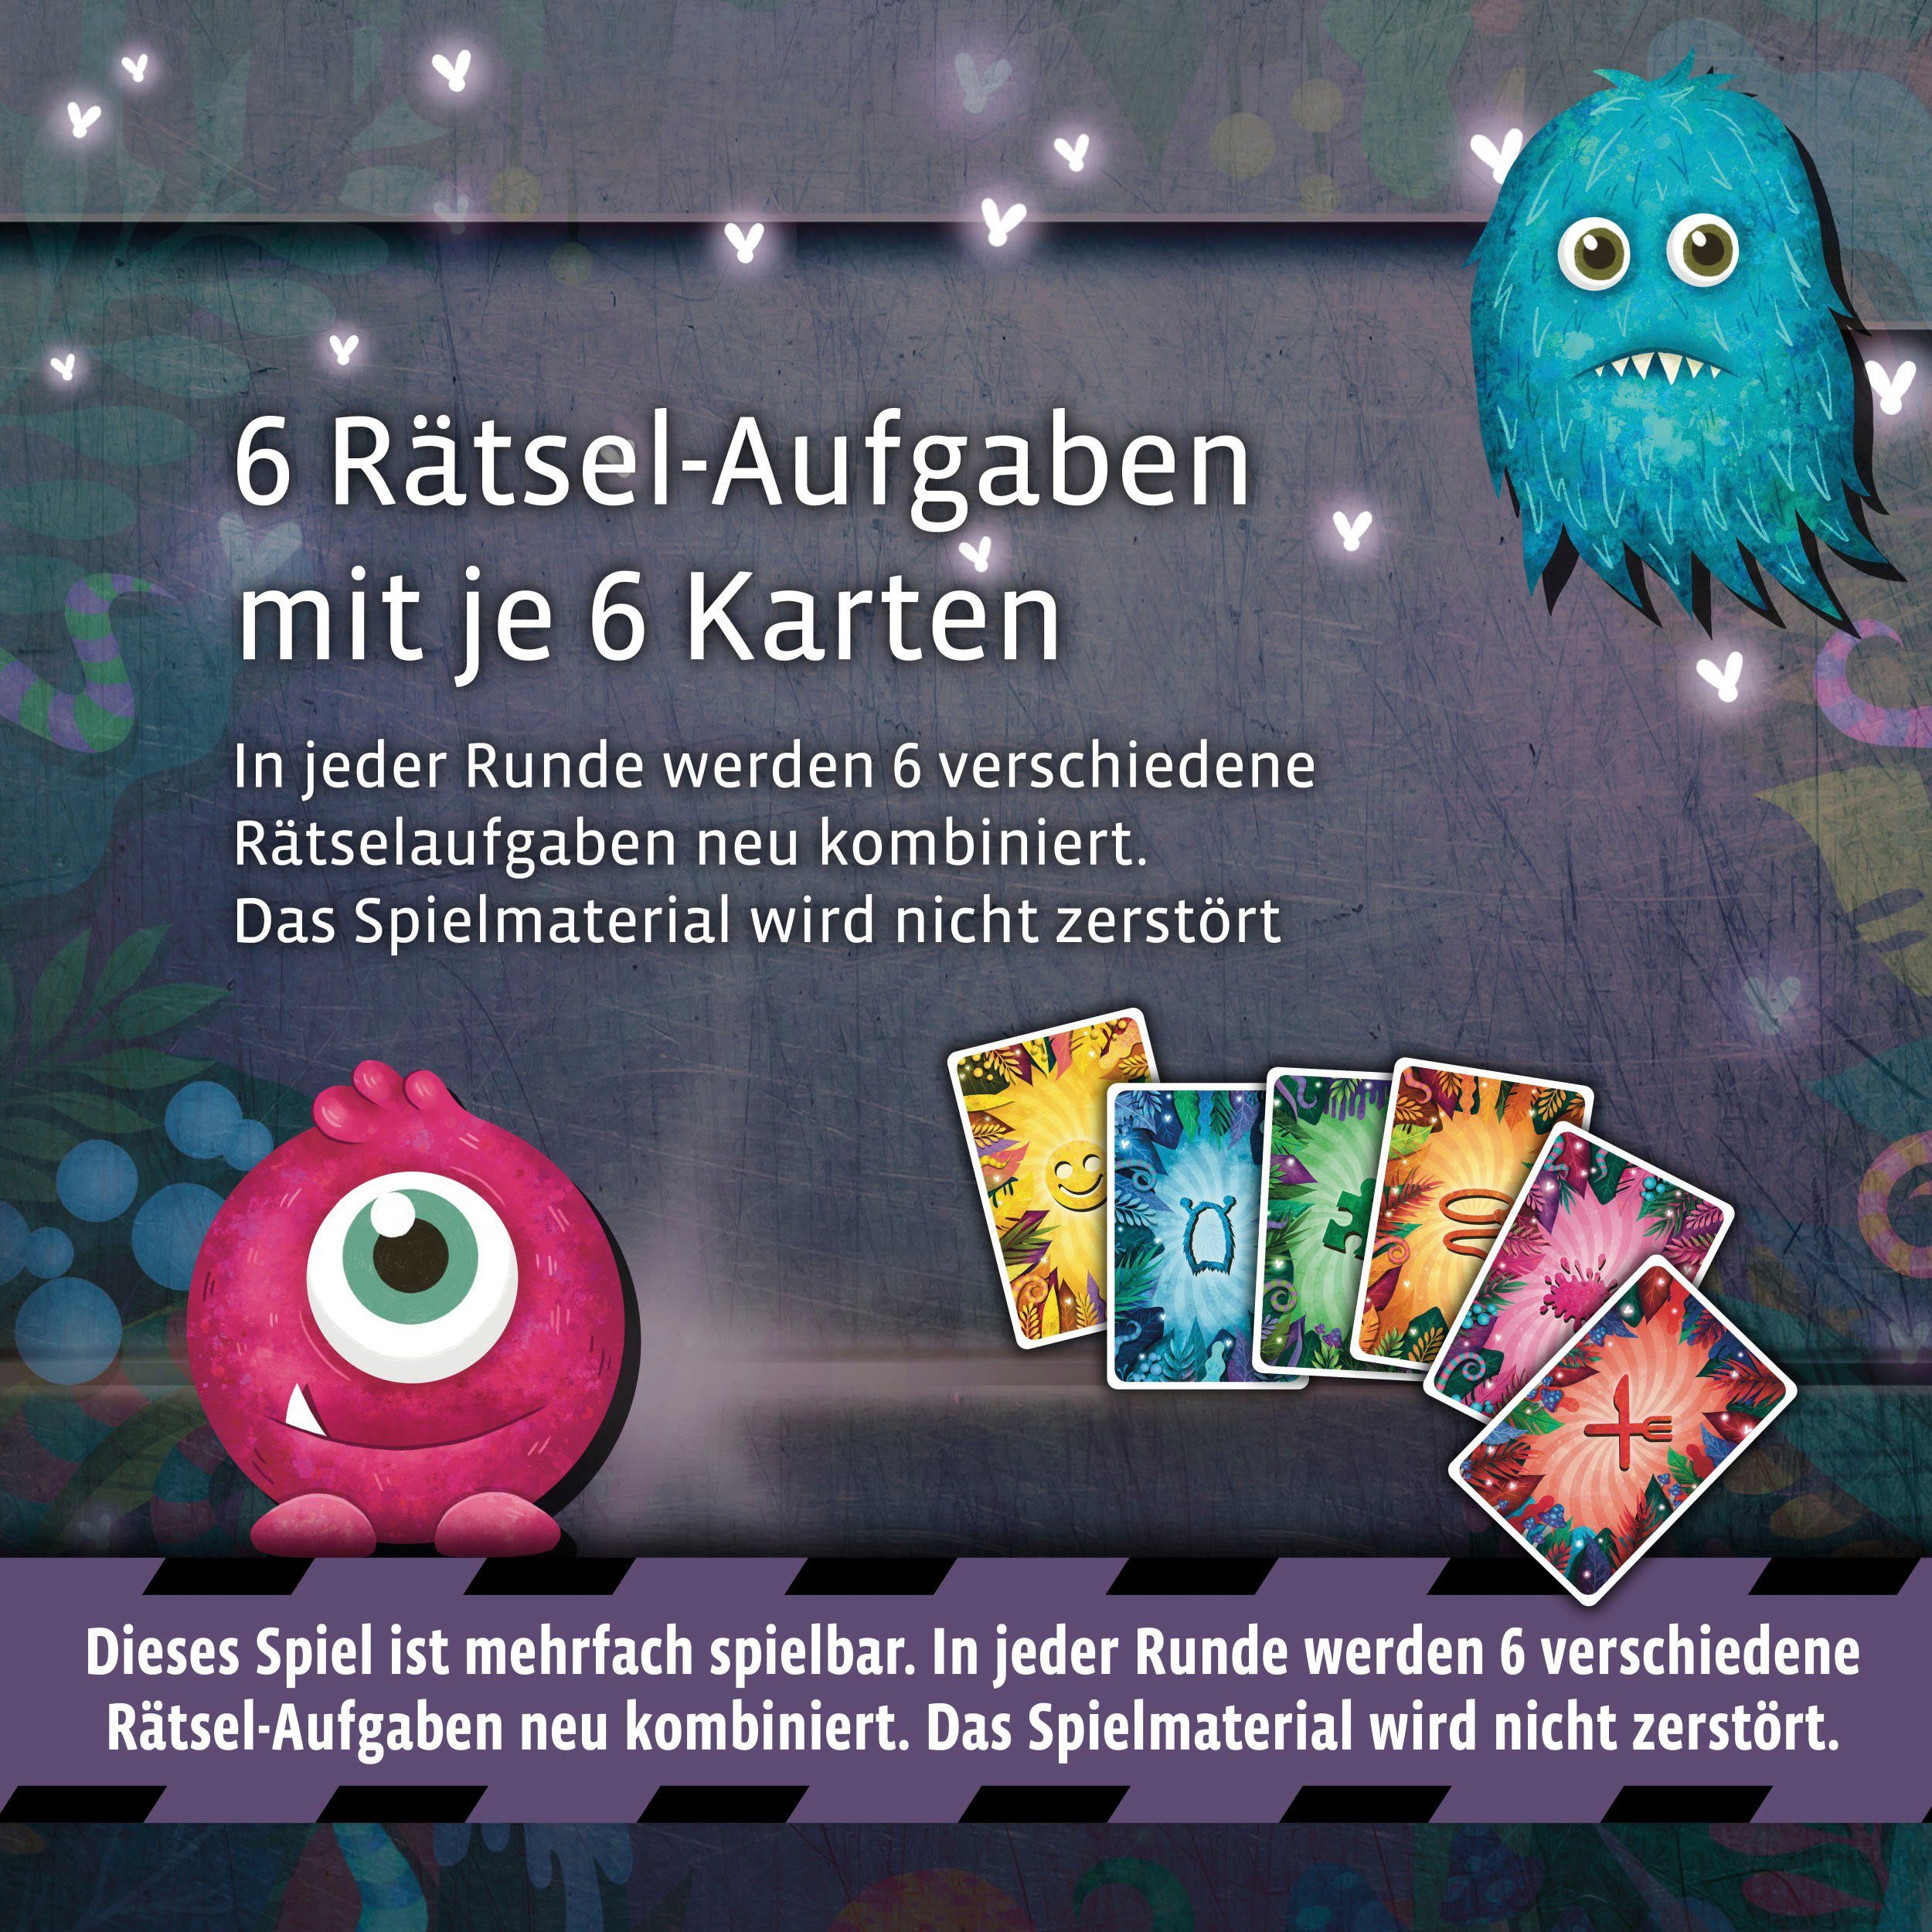 Kosmos Spiel, Kinderspiel EXIT® Spiel - Kids Made Germany Rätselspaß, Monstermäßiger Das in